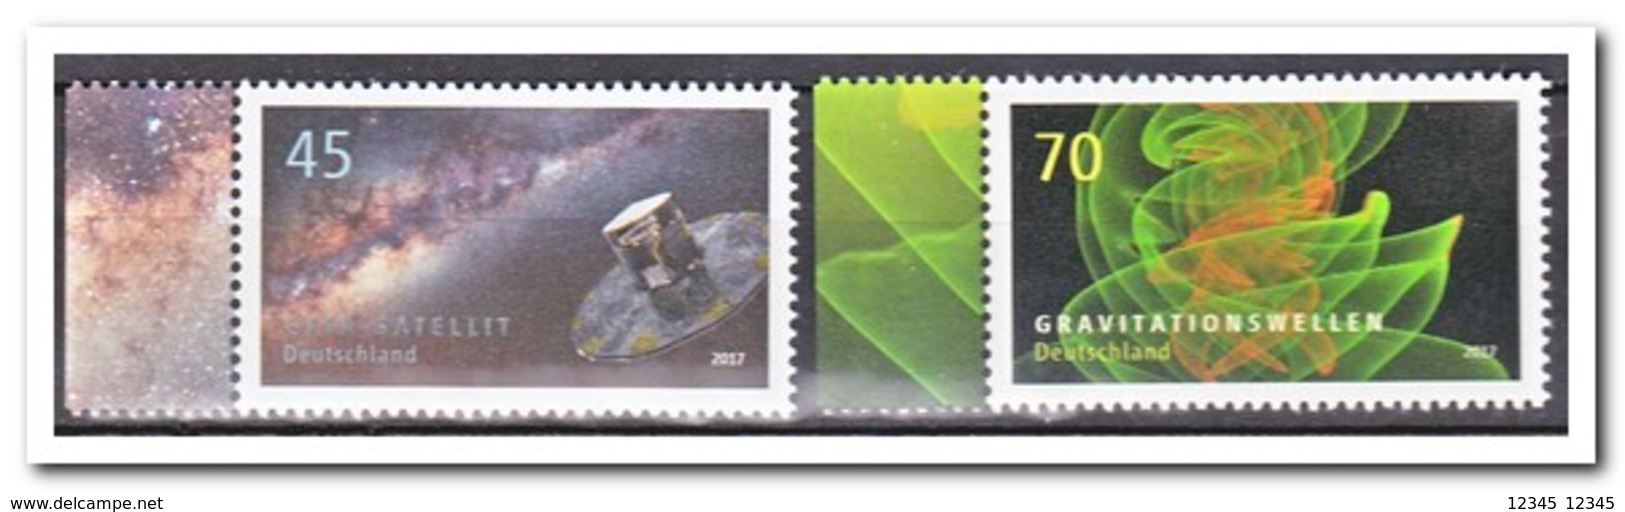 Duitsland 2017, Postfris MNH, MI 3347-48, Astrophysics - Unused Stamps